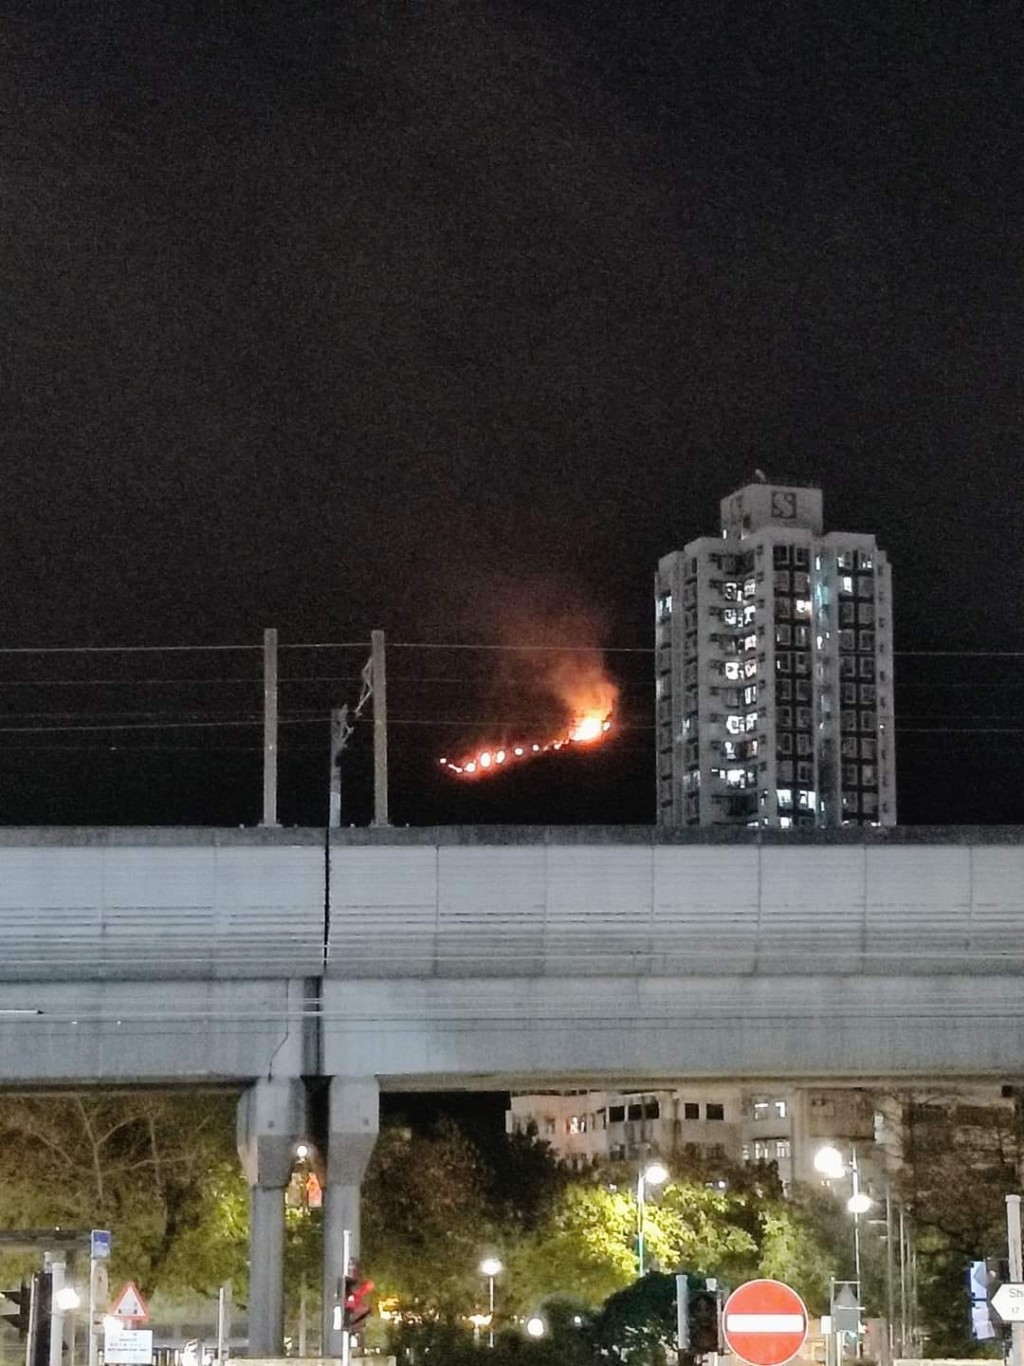 远处清晰可见山头熊熊火光。屯门友fb图片